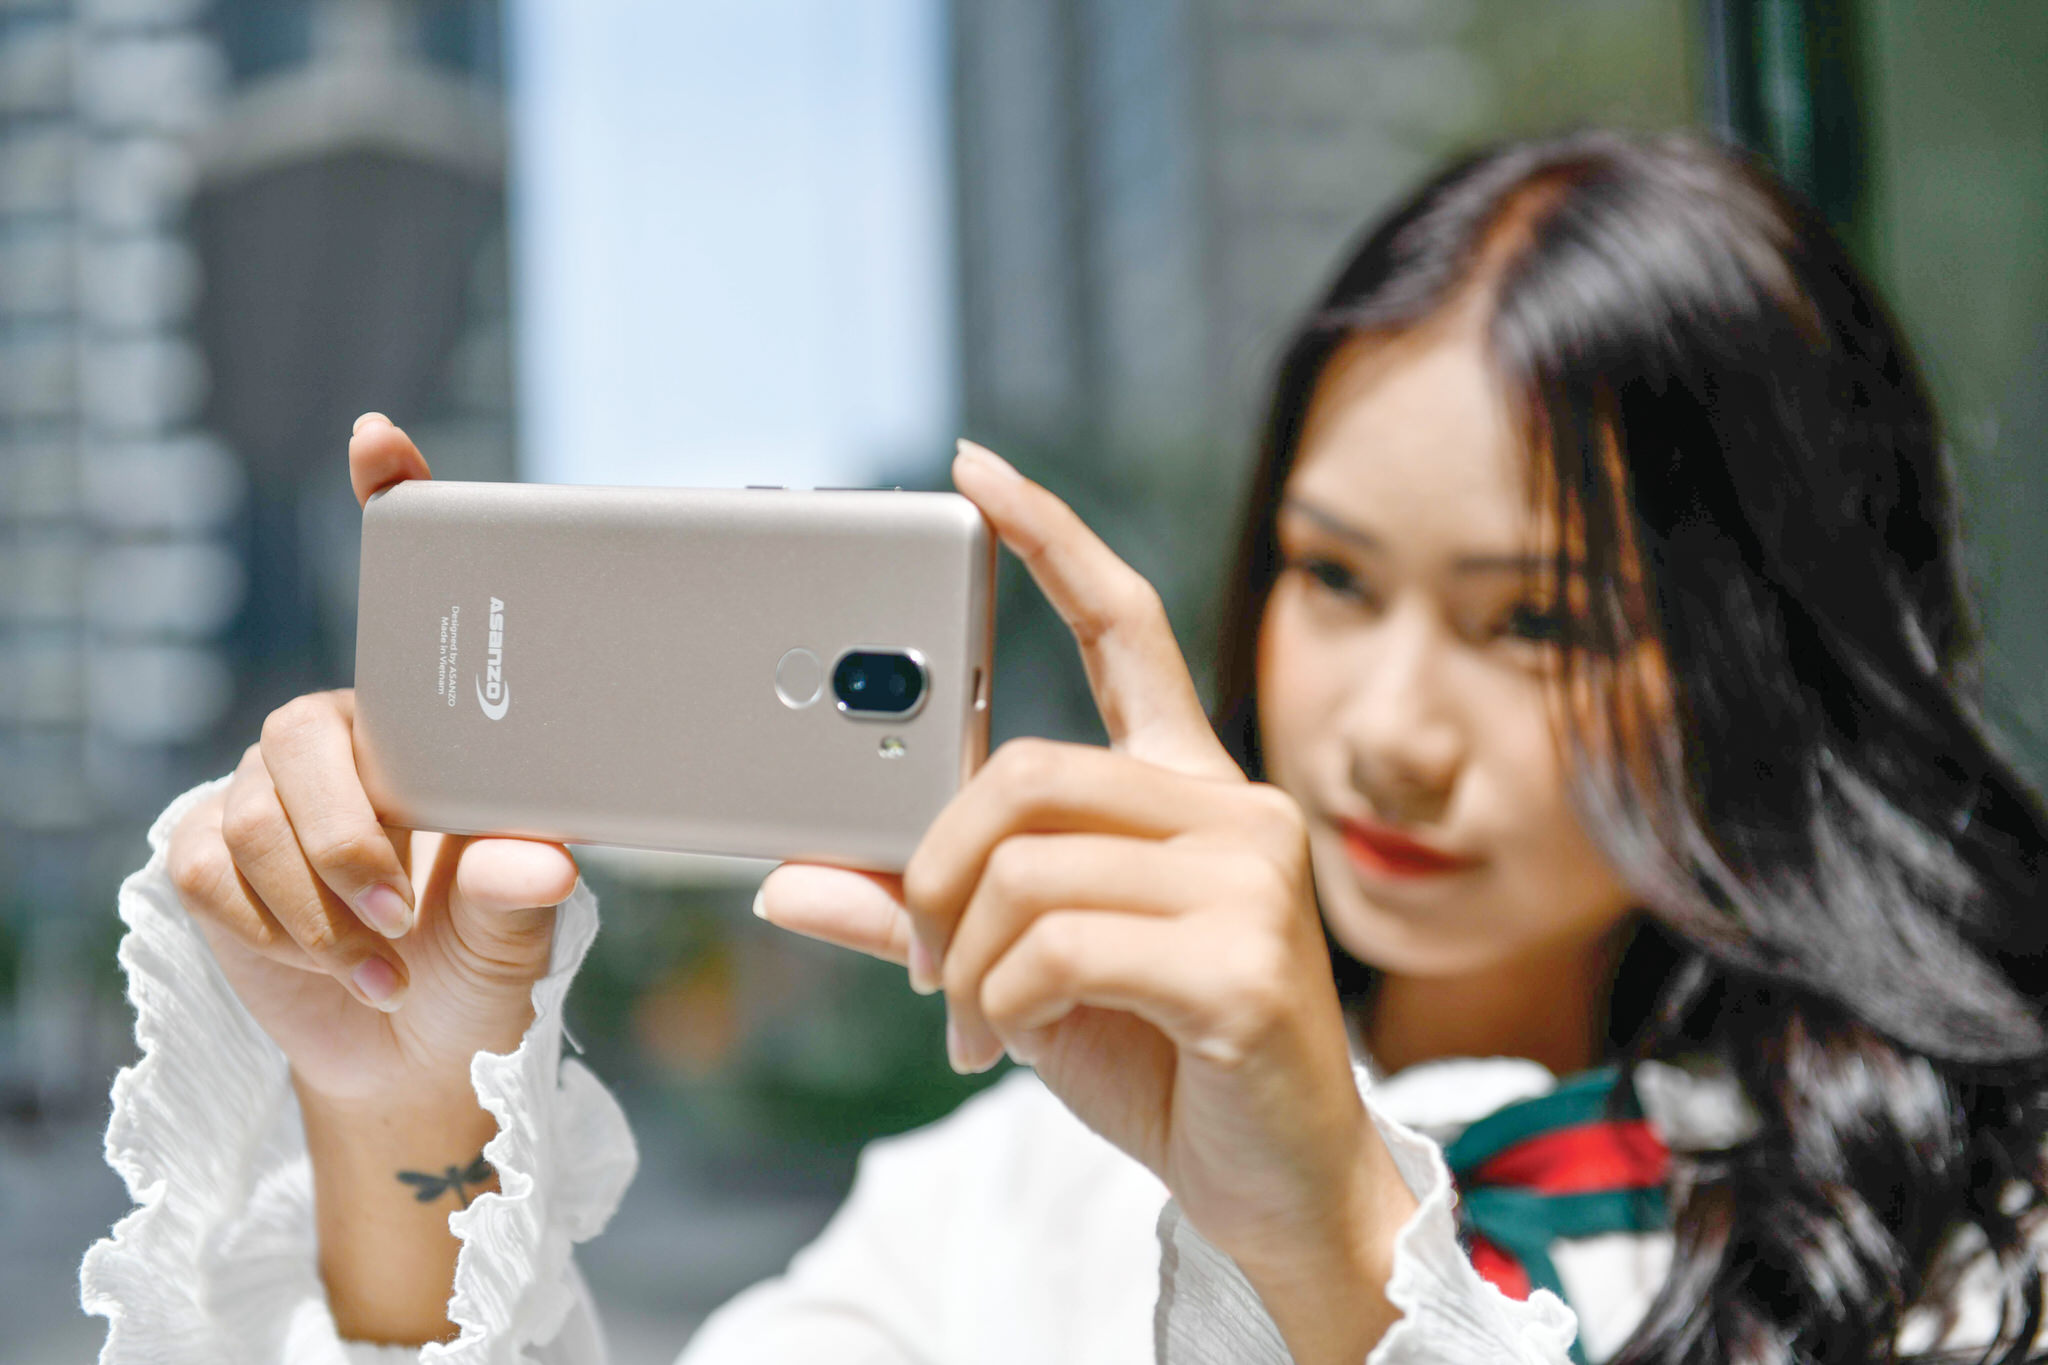 Asanzo A1 - Smartphone Việt đầu tiên chạy Android Go hướng tới người dùng phổ thông với mức giá dưới 2 triệu đồng